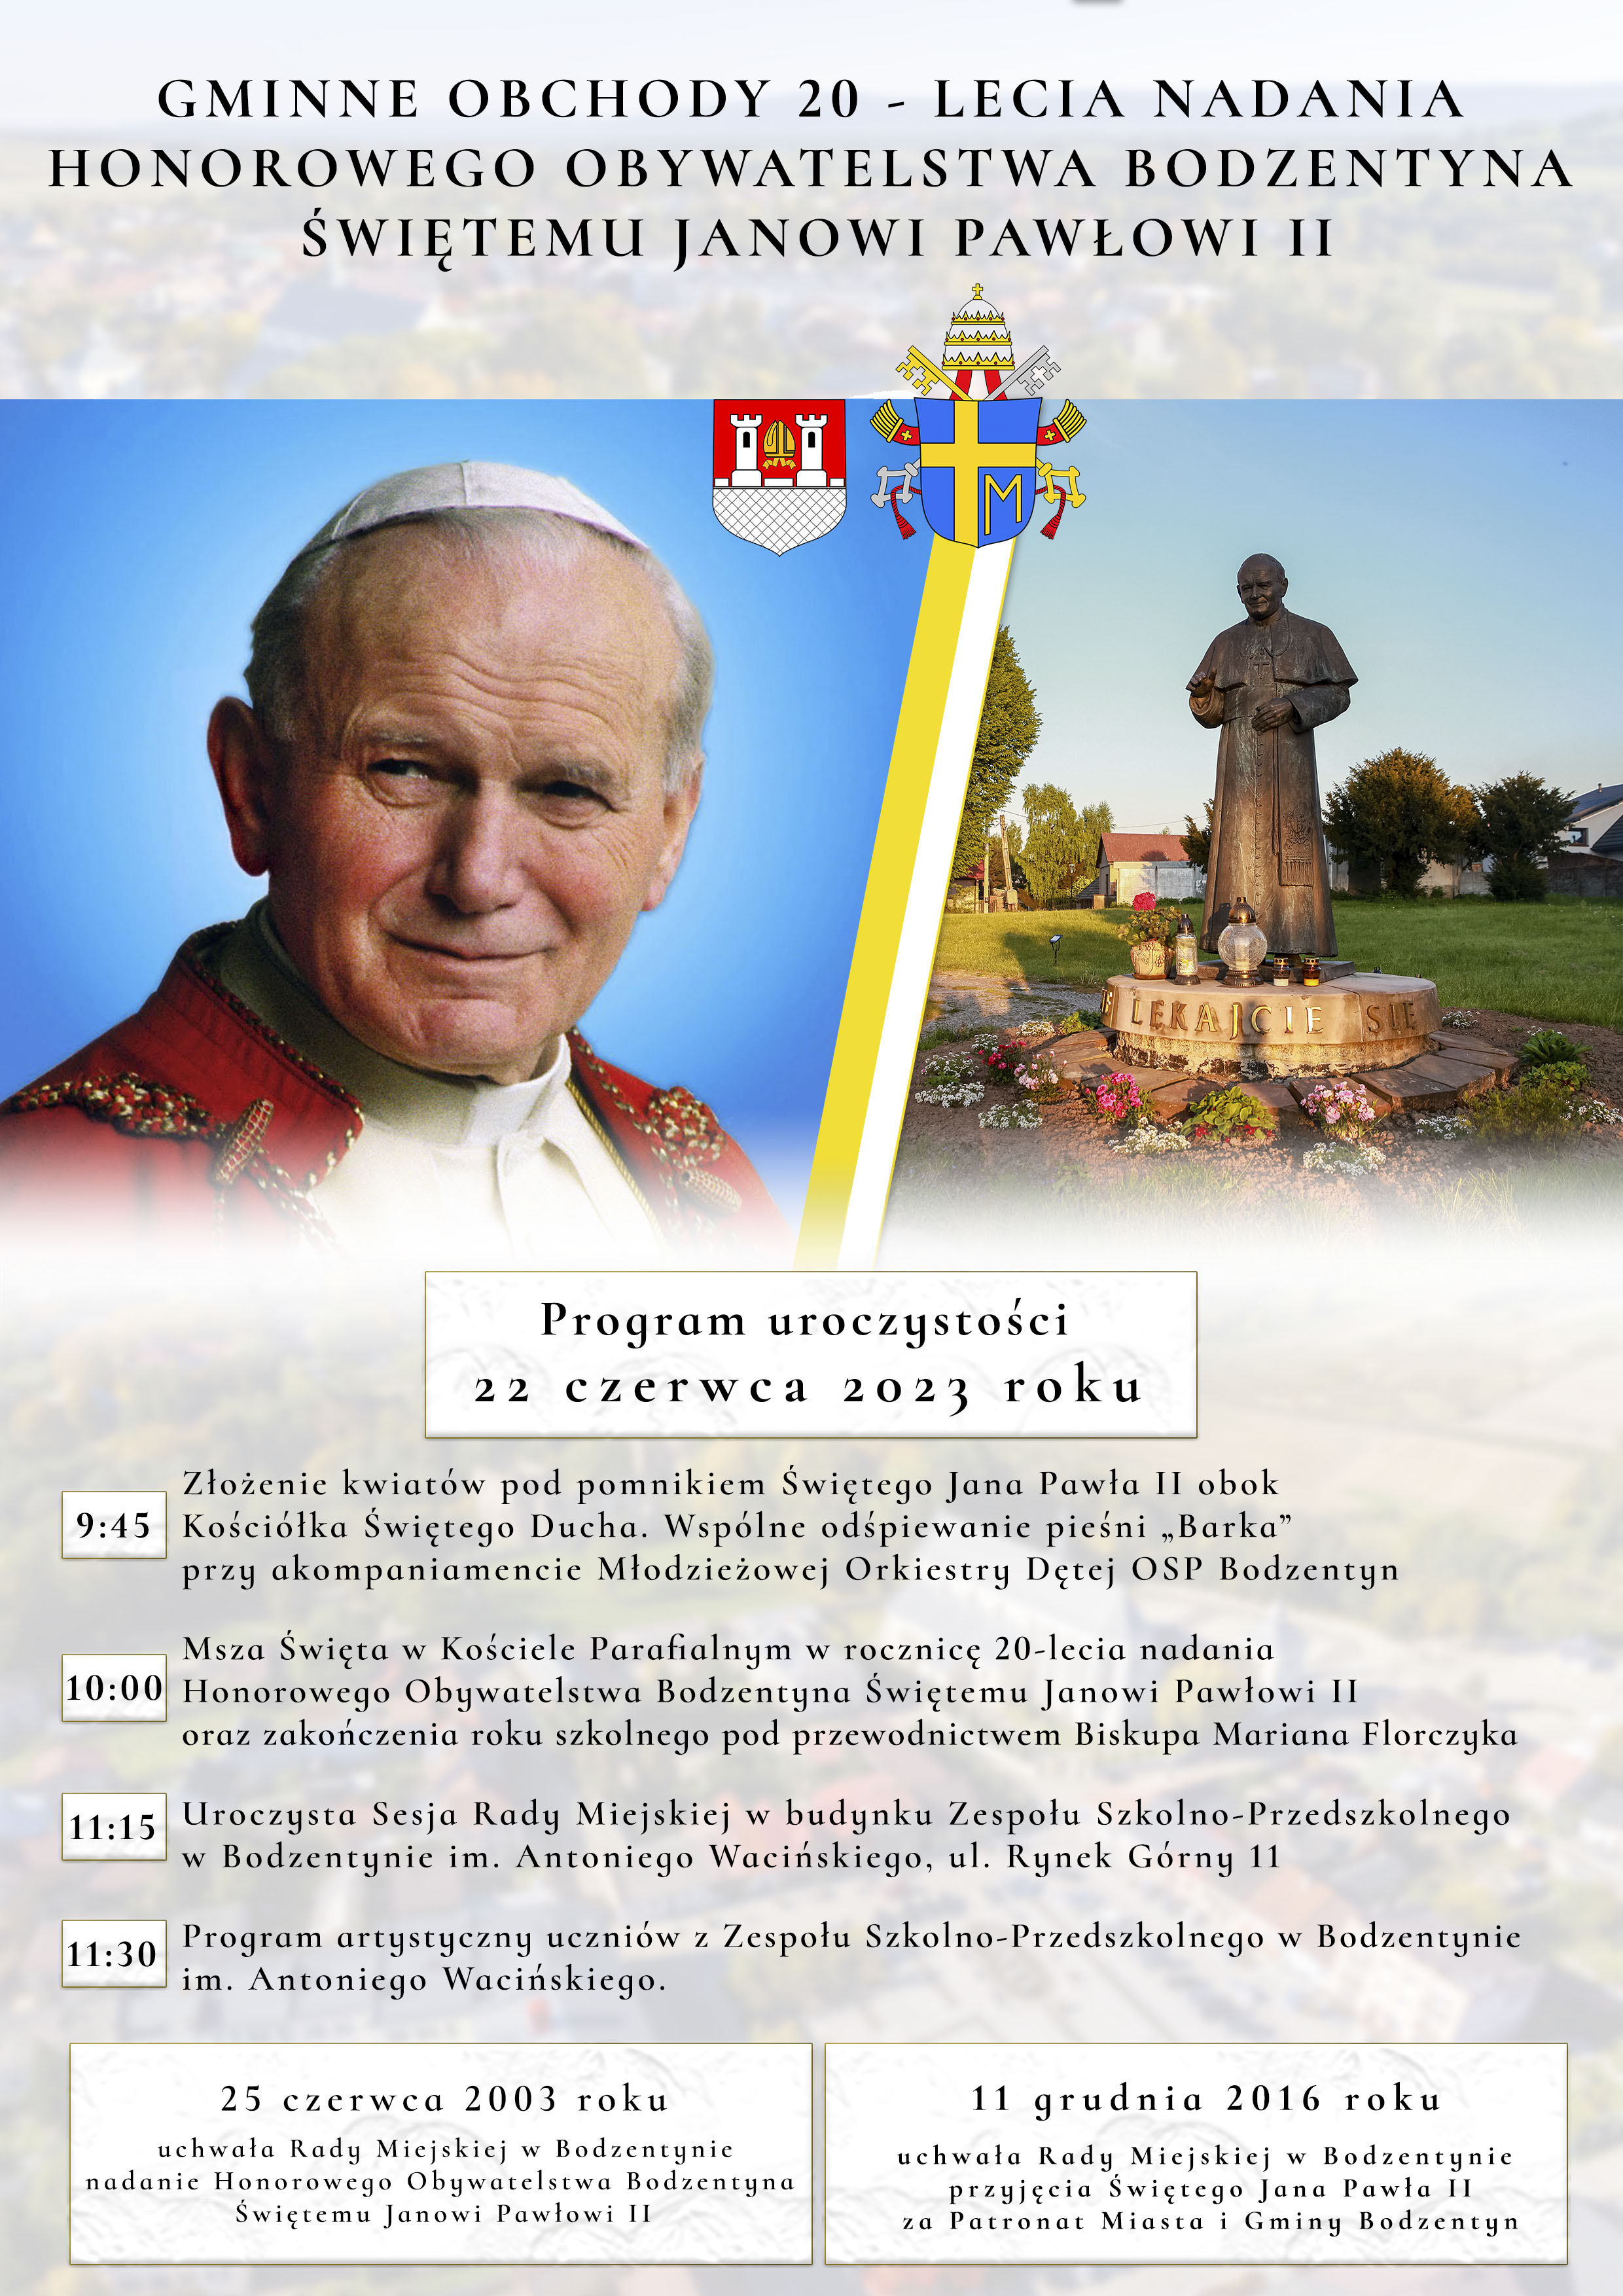 Zapraszamy na Gminne Obchody 20 - Lecie Nadania Honorowego Obywatelstwa Bodzentyna Świętemu Janowi Pawłowi II